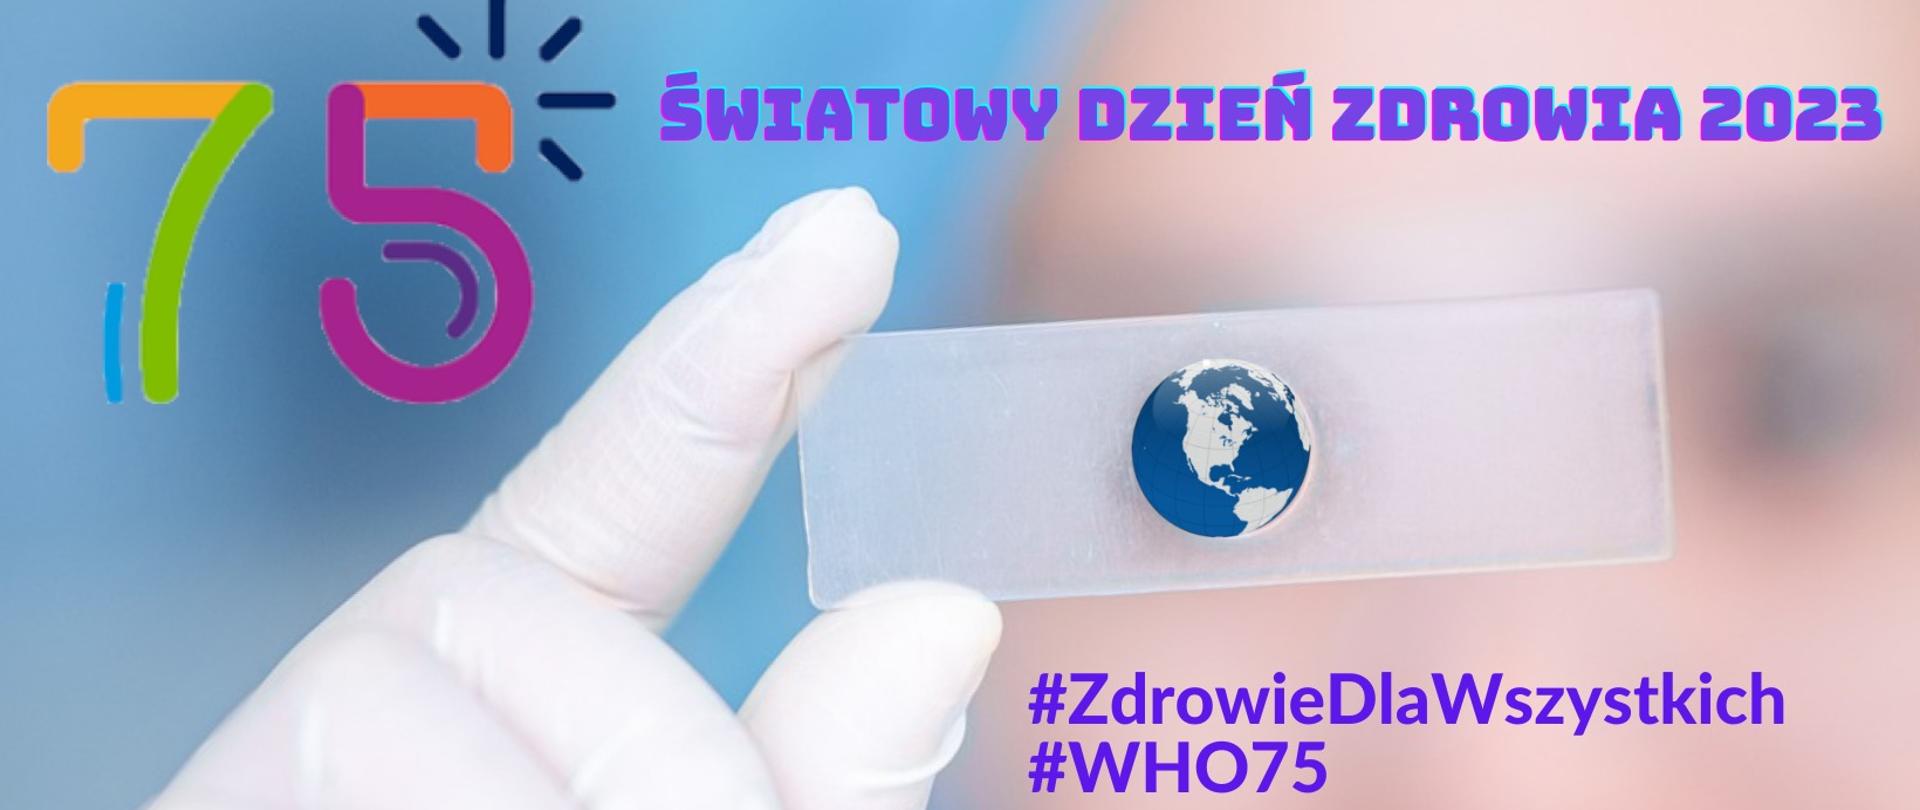 Baner na rozmytym tle dłoń laboranta z płytką na której widnieje kula ziemska. poniżej napis #ZdrowieDlaWszystkich, #WHO75